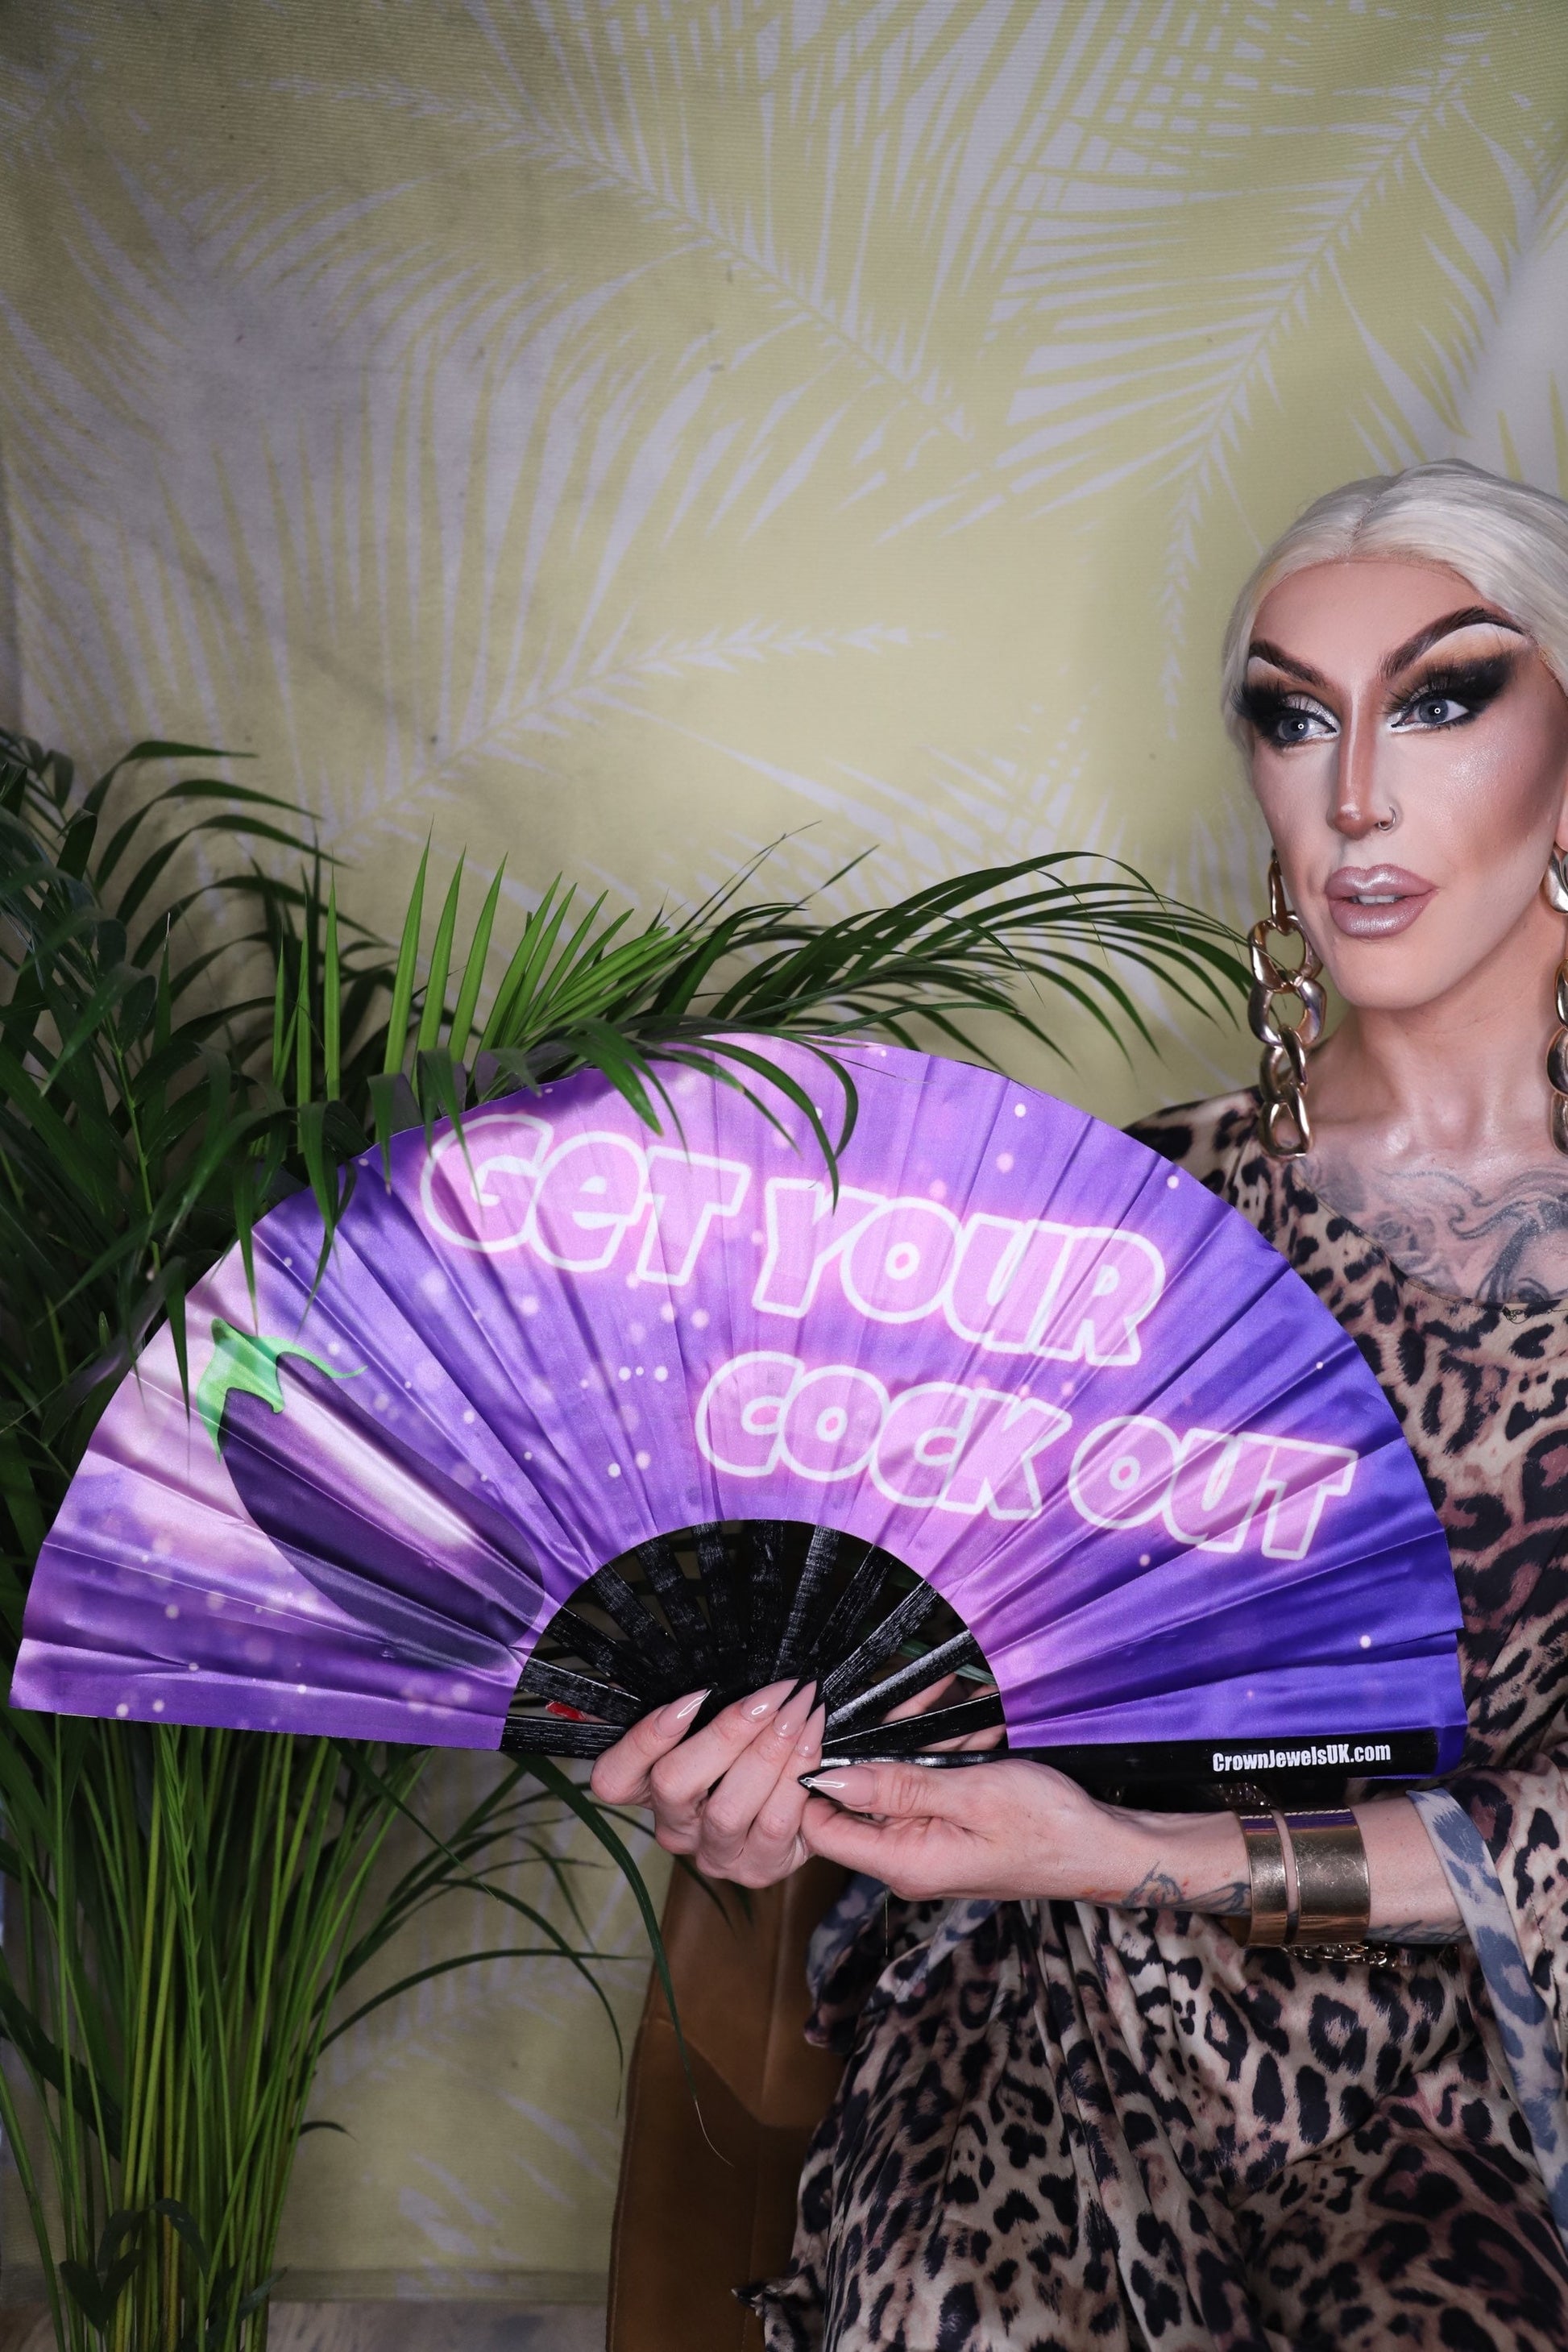 Get your Cock out Fan, Drag Queen Bamboo Hand Fan, Fans, Clack Fan, Loud Fan, Bang Fan